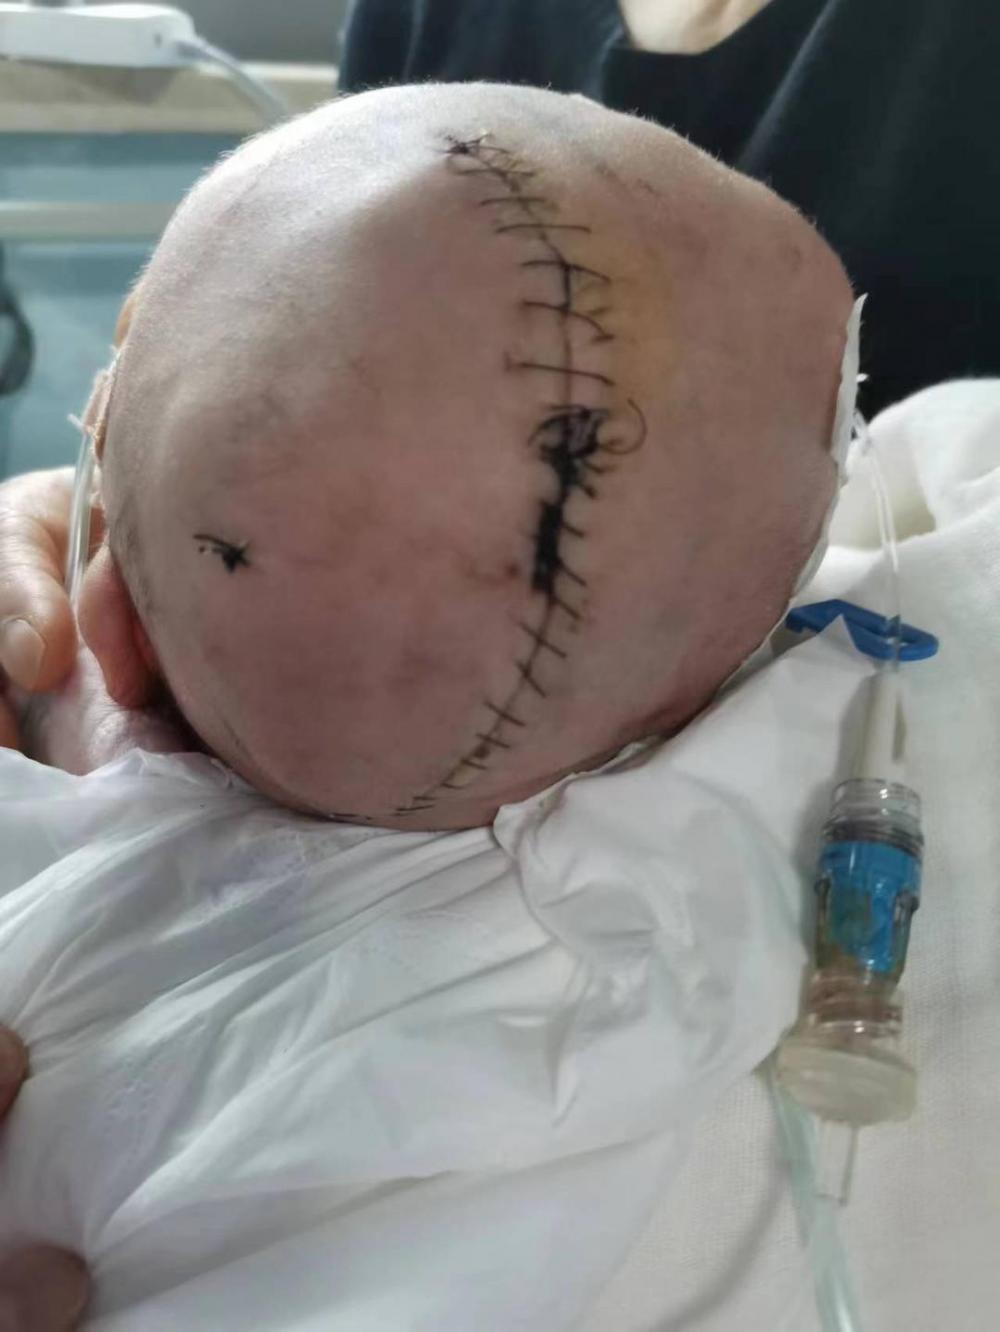 婴儿出生后被发现颅骨骨折家长质疑医生操作不当医院会承担责任但需